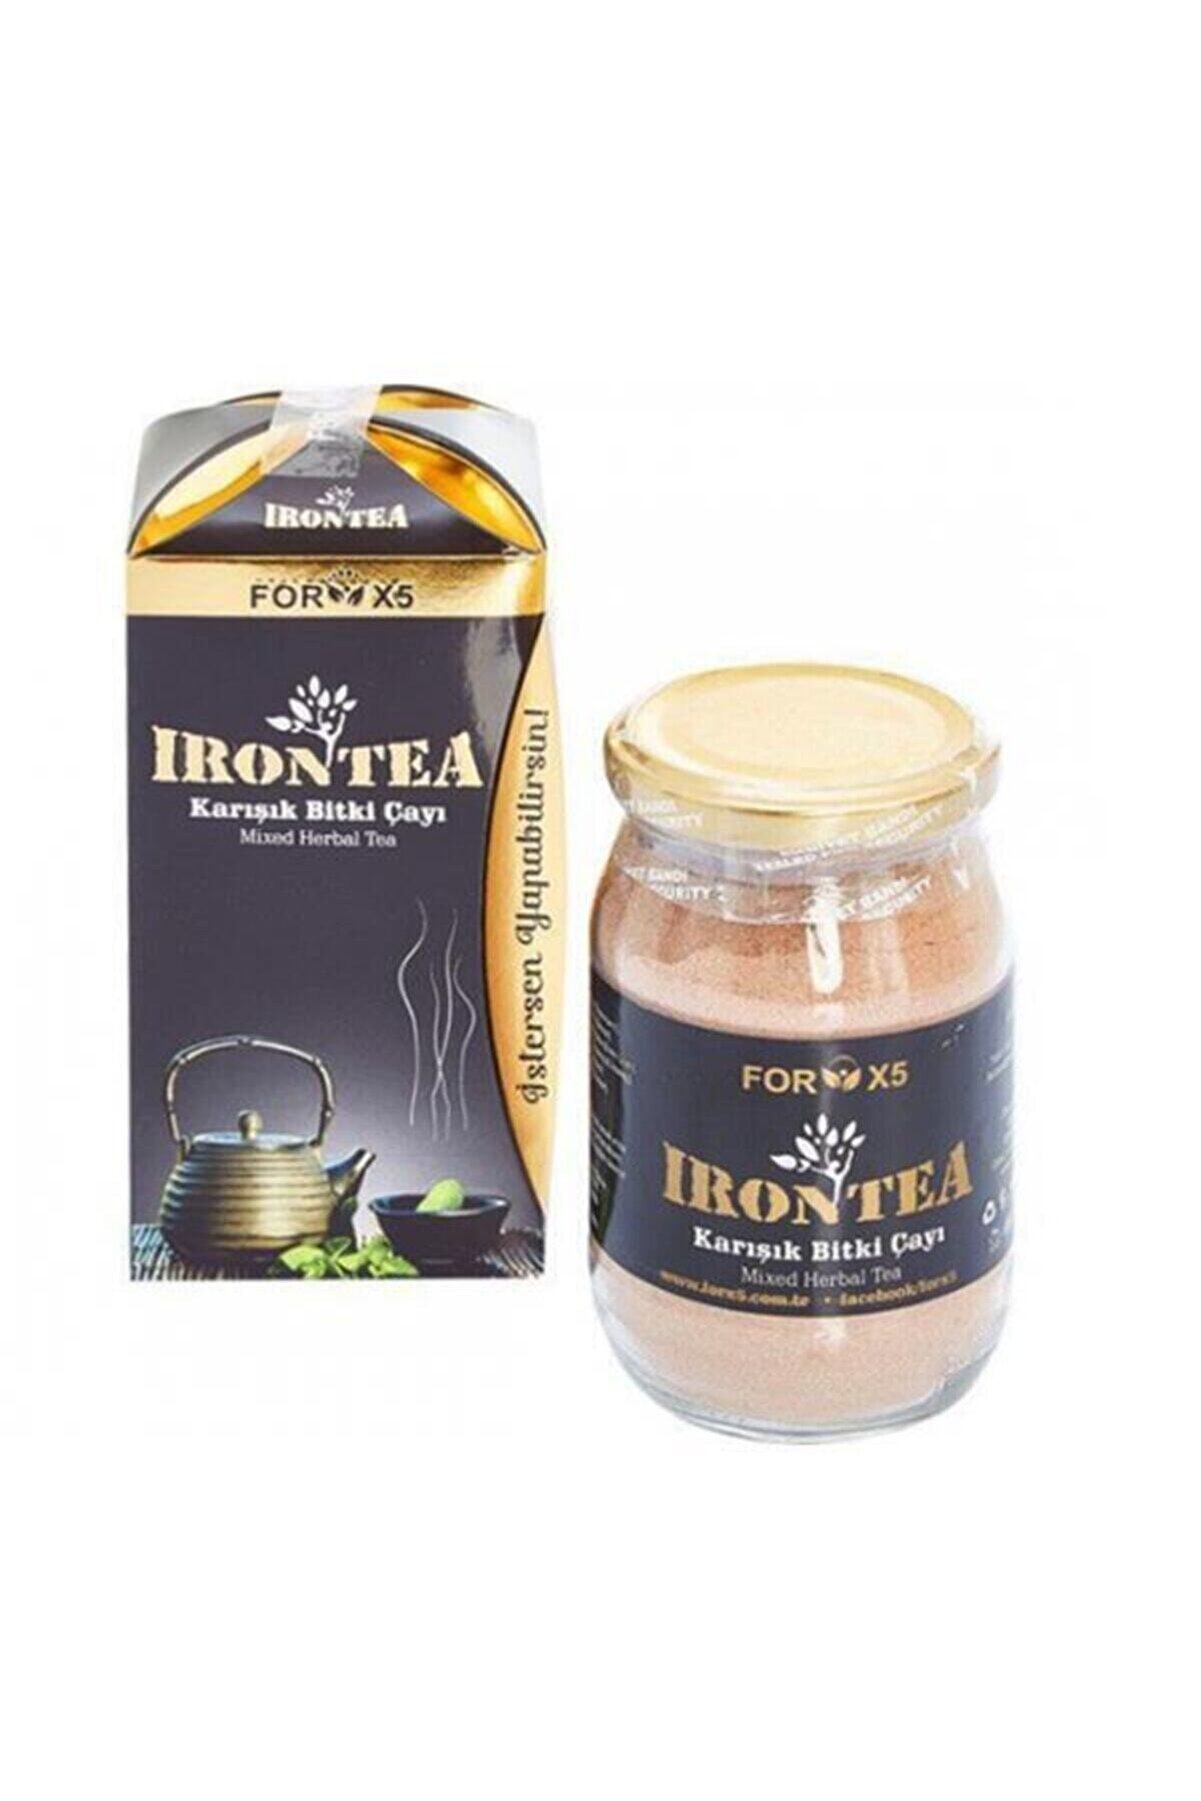 FORX5 Iron Tea